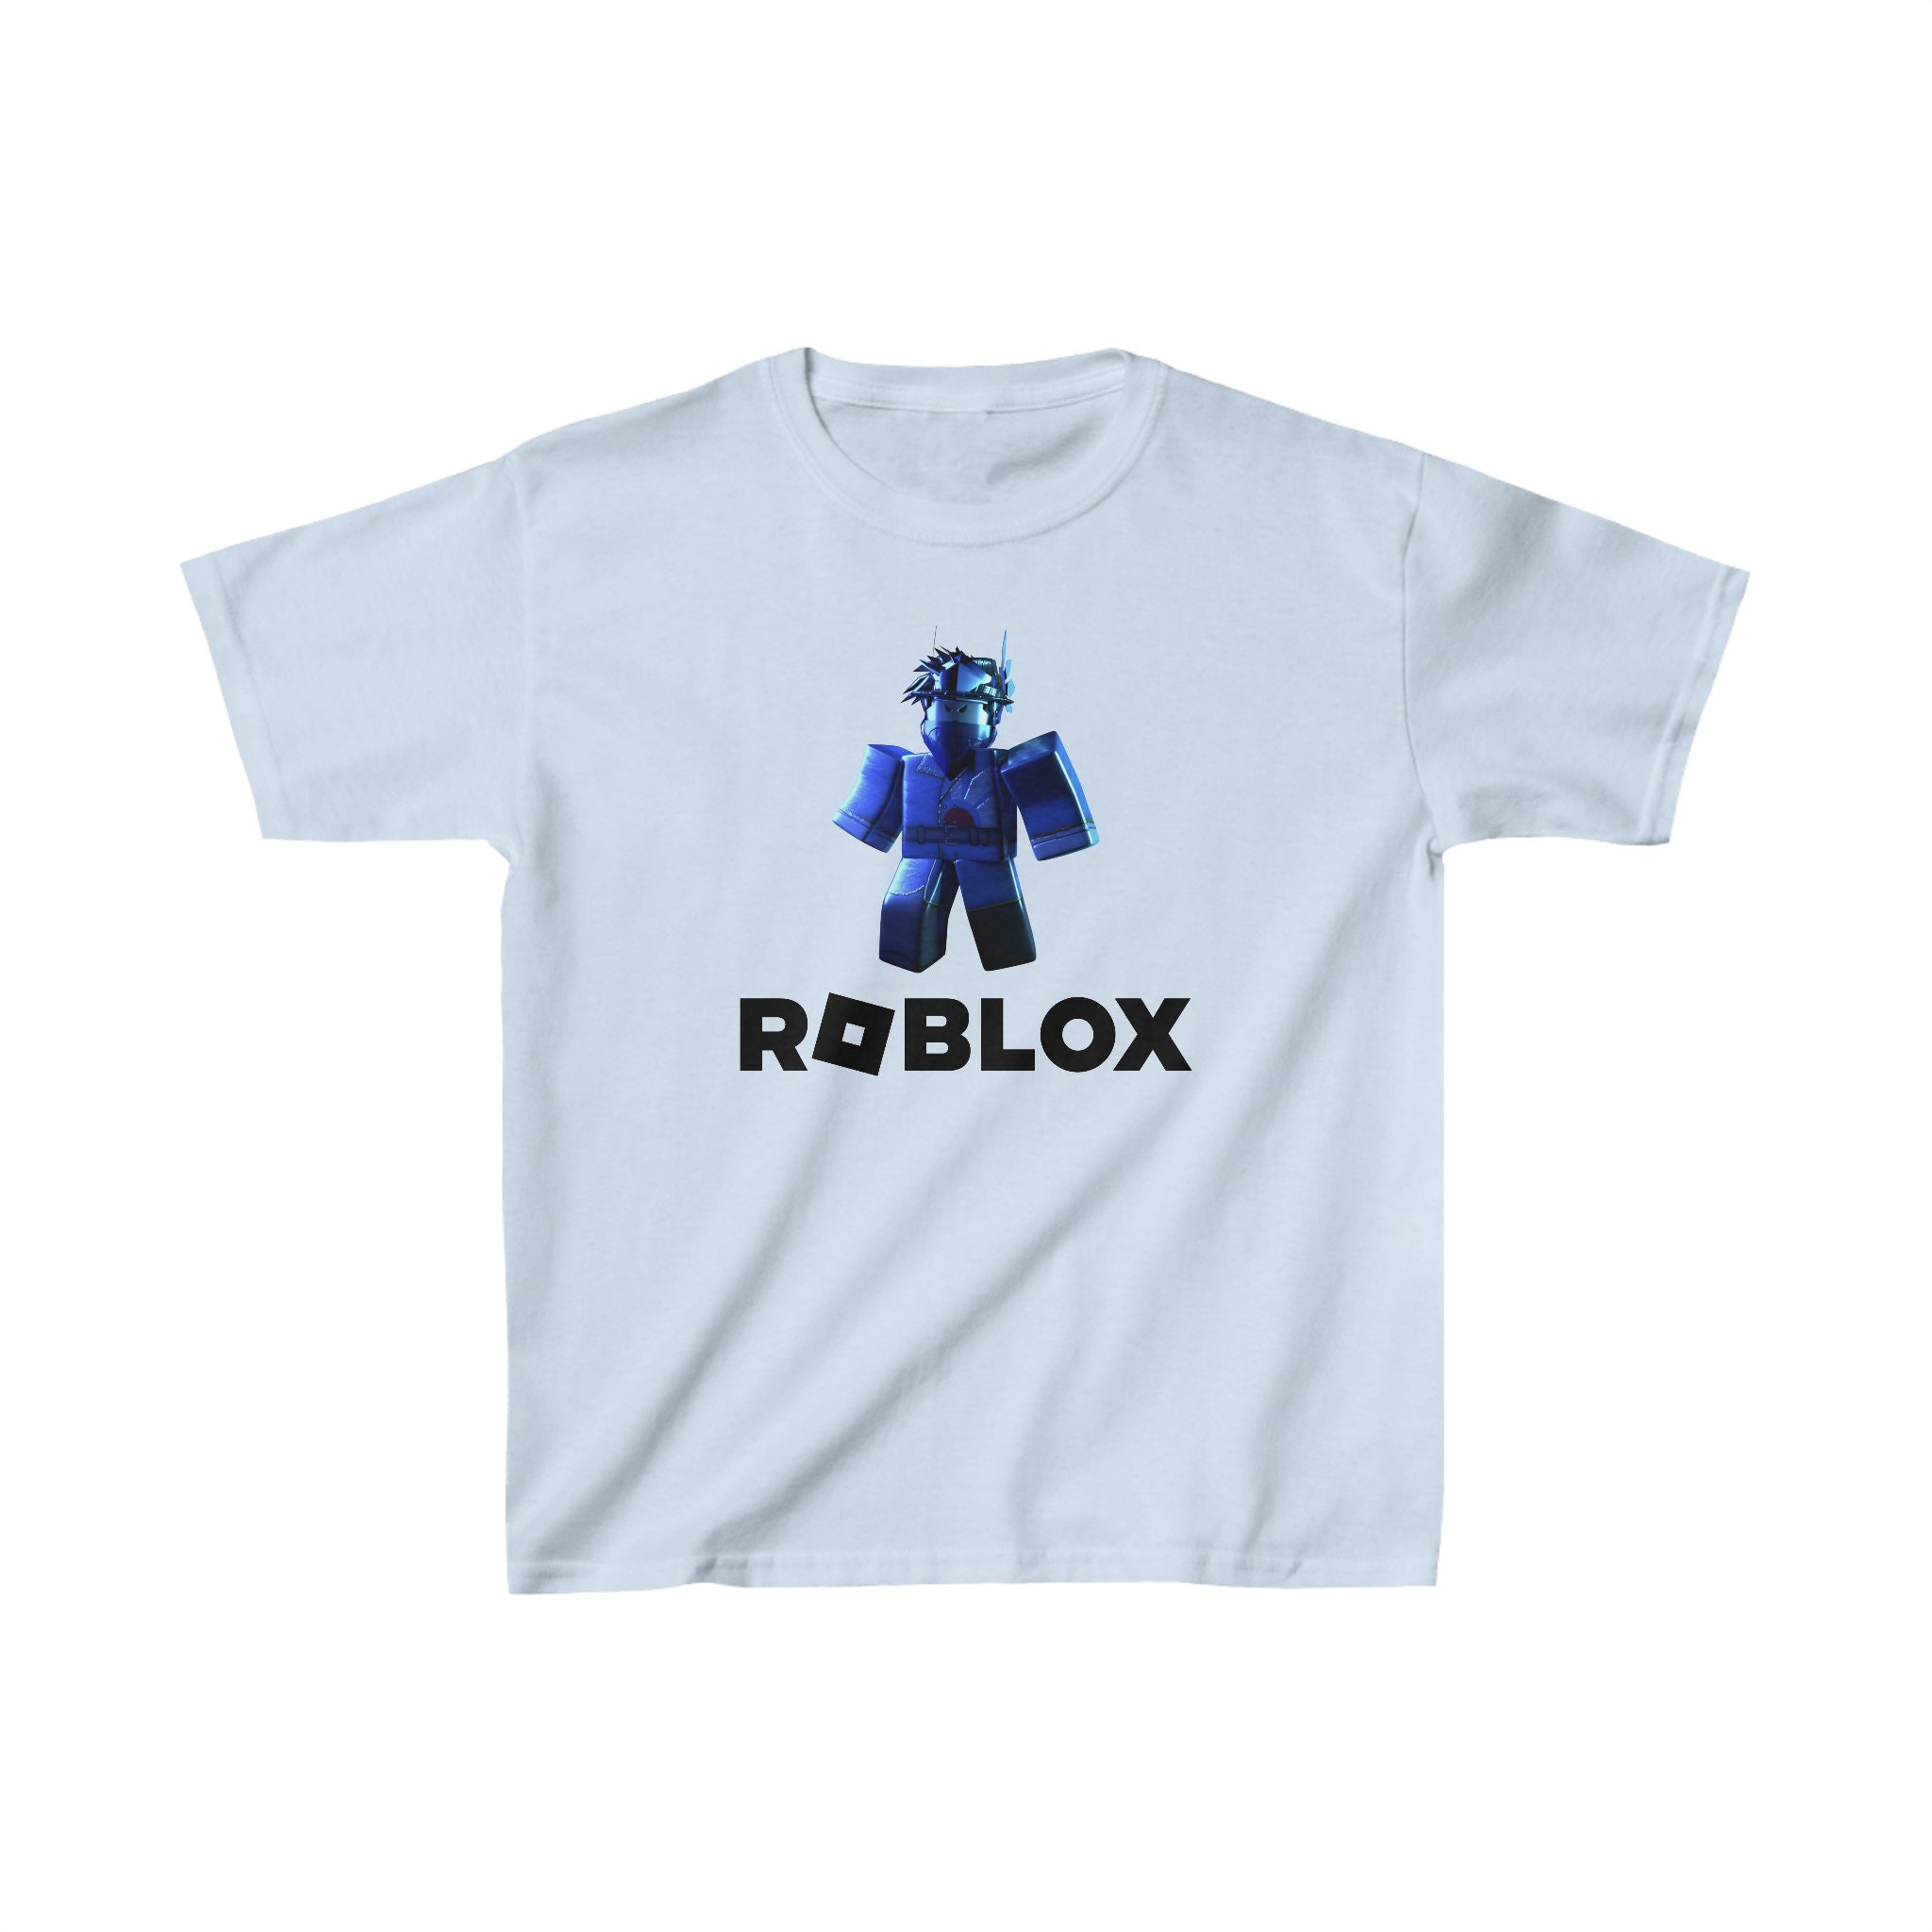 23 Roblox T-Shirts ideas  roblox t shirts, roblox, roblox t-shirt